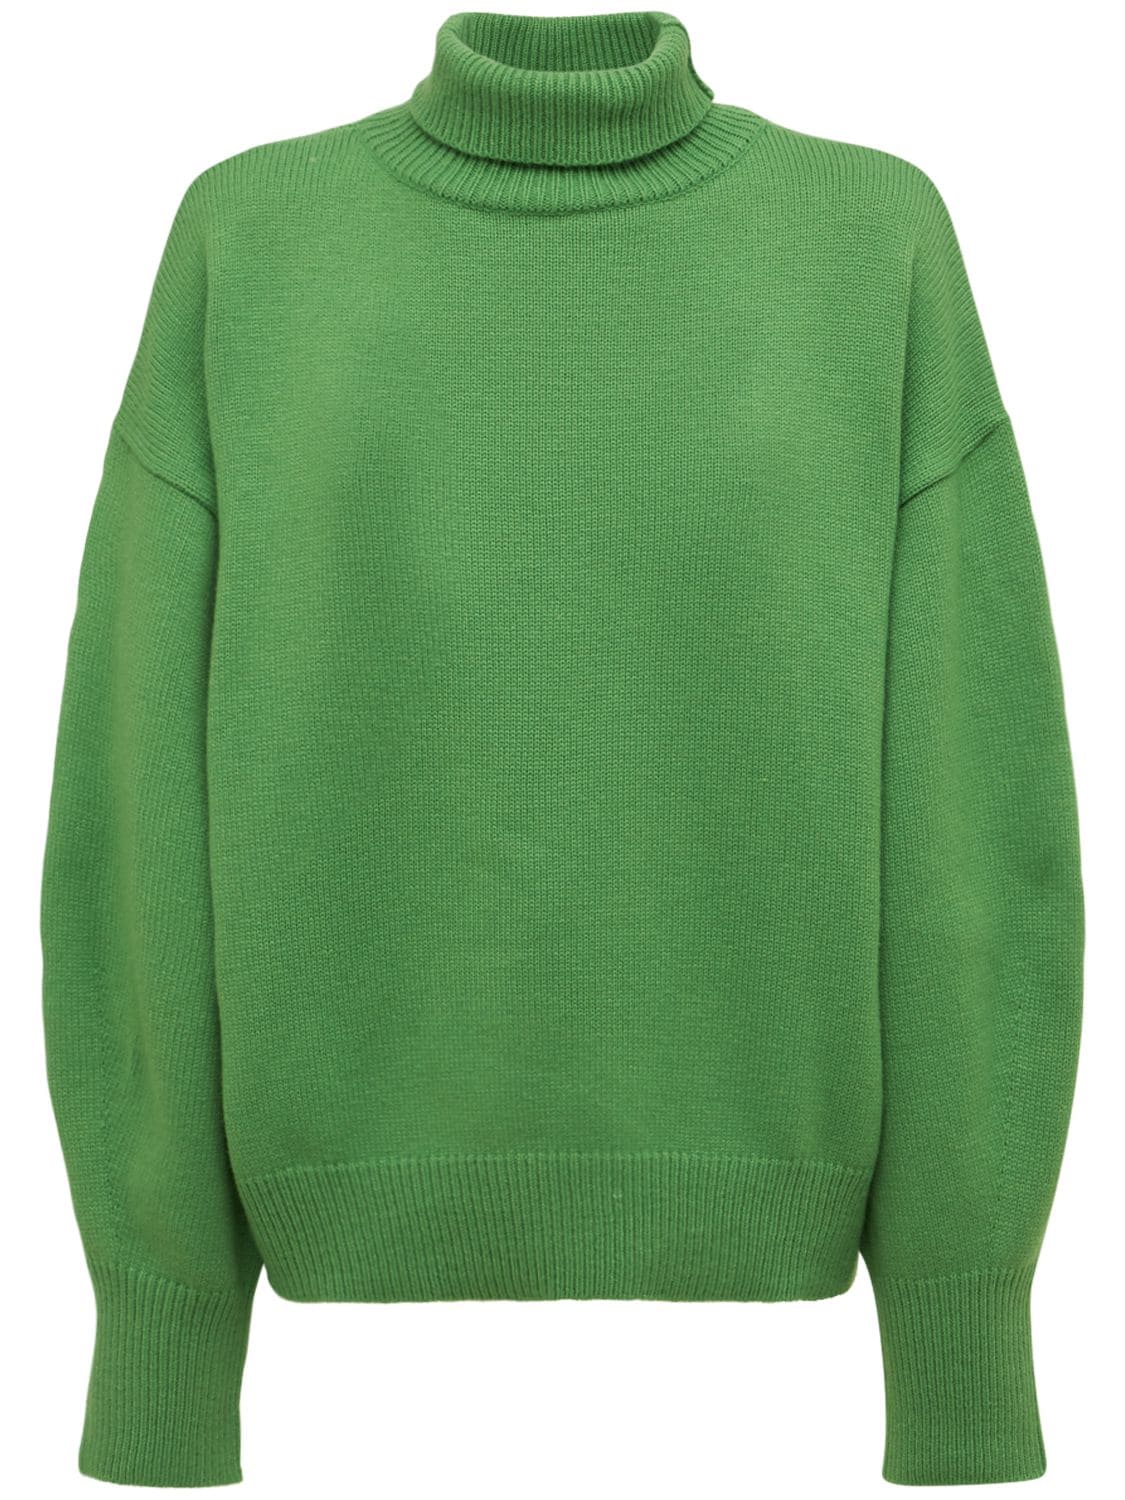 The Frankie Shop - Joya merino wool blend roll neck sweater - Green ...